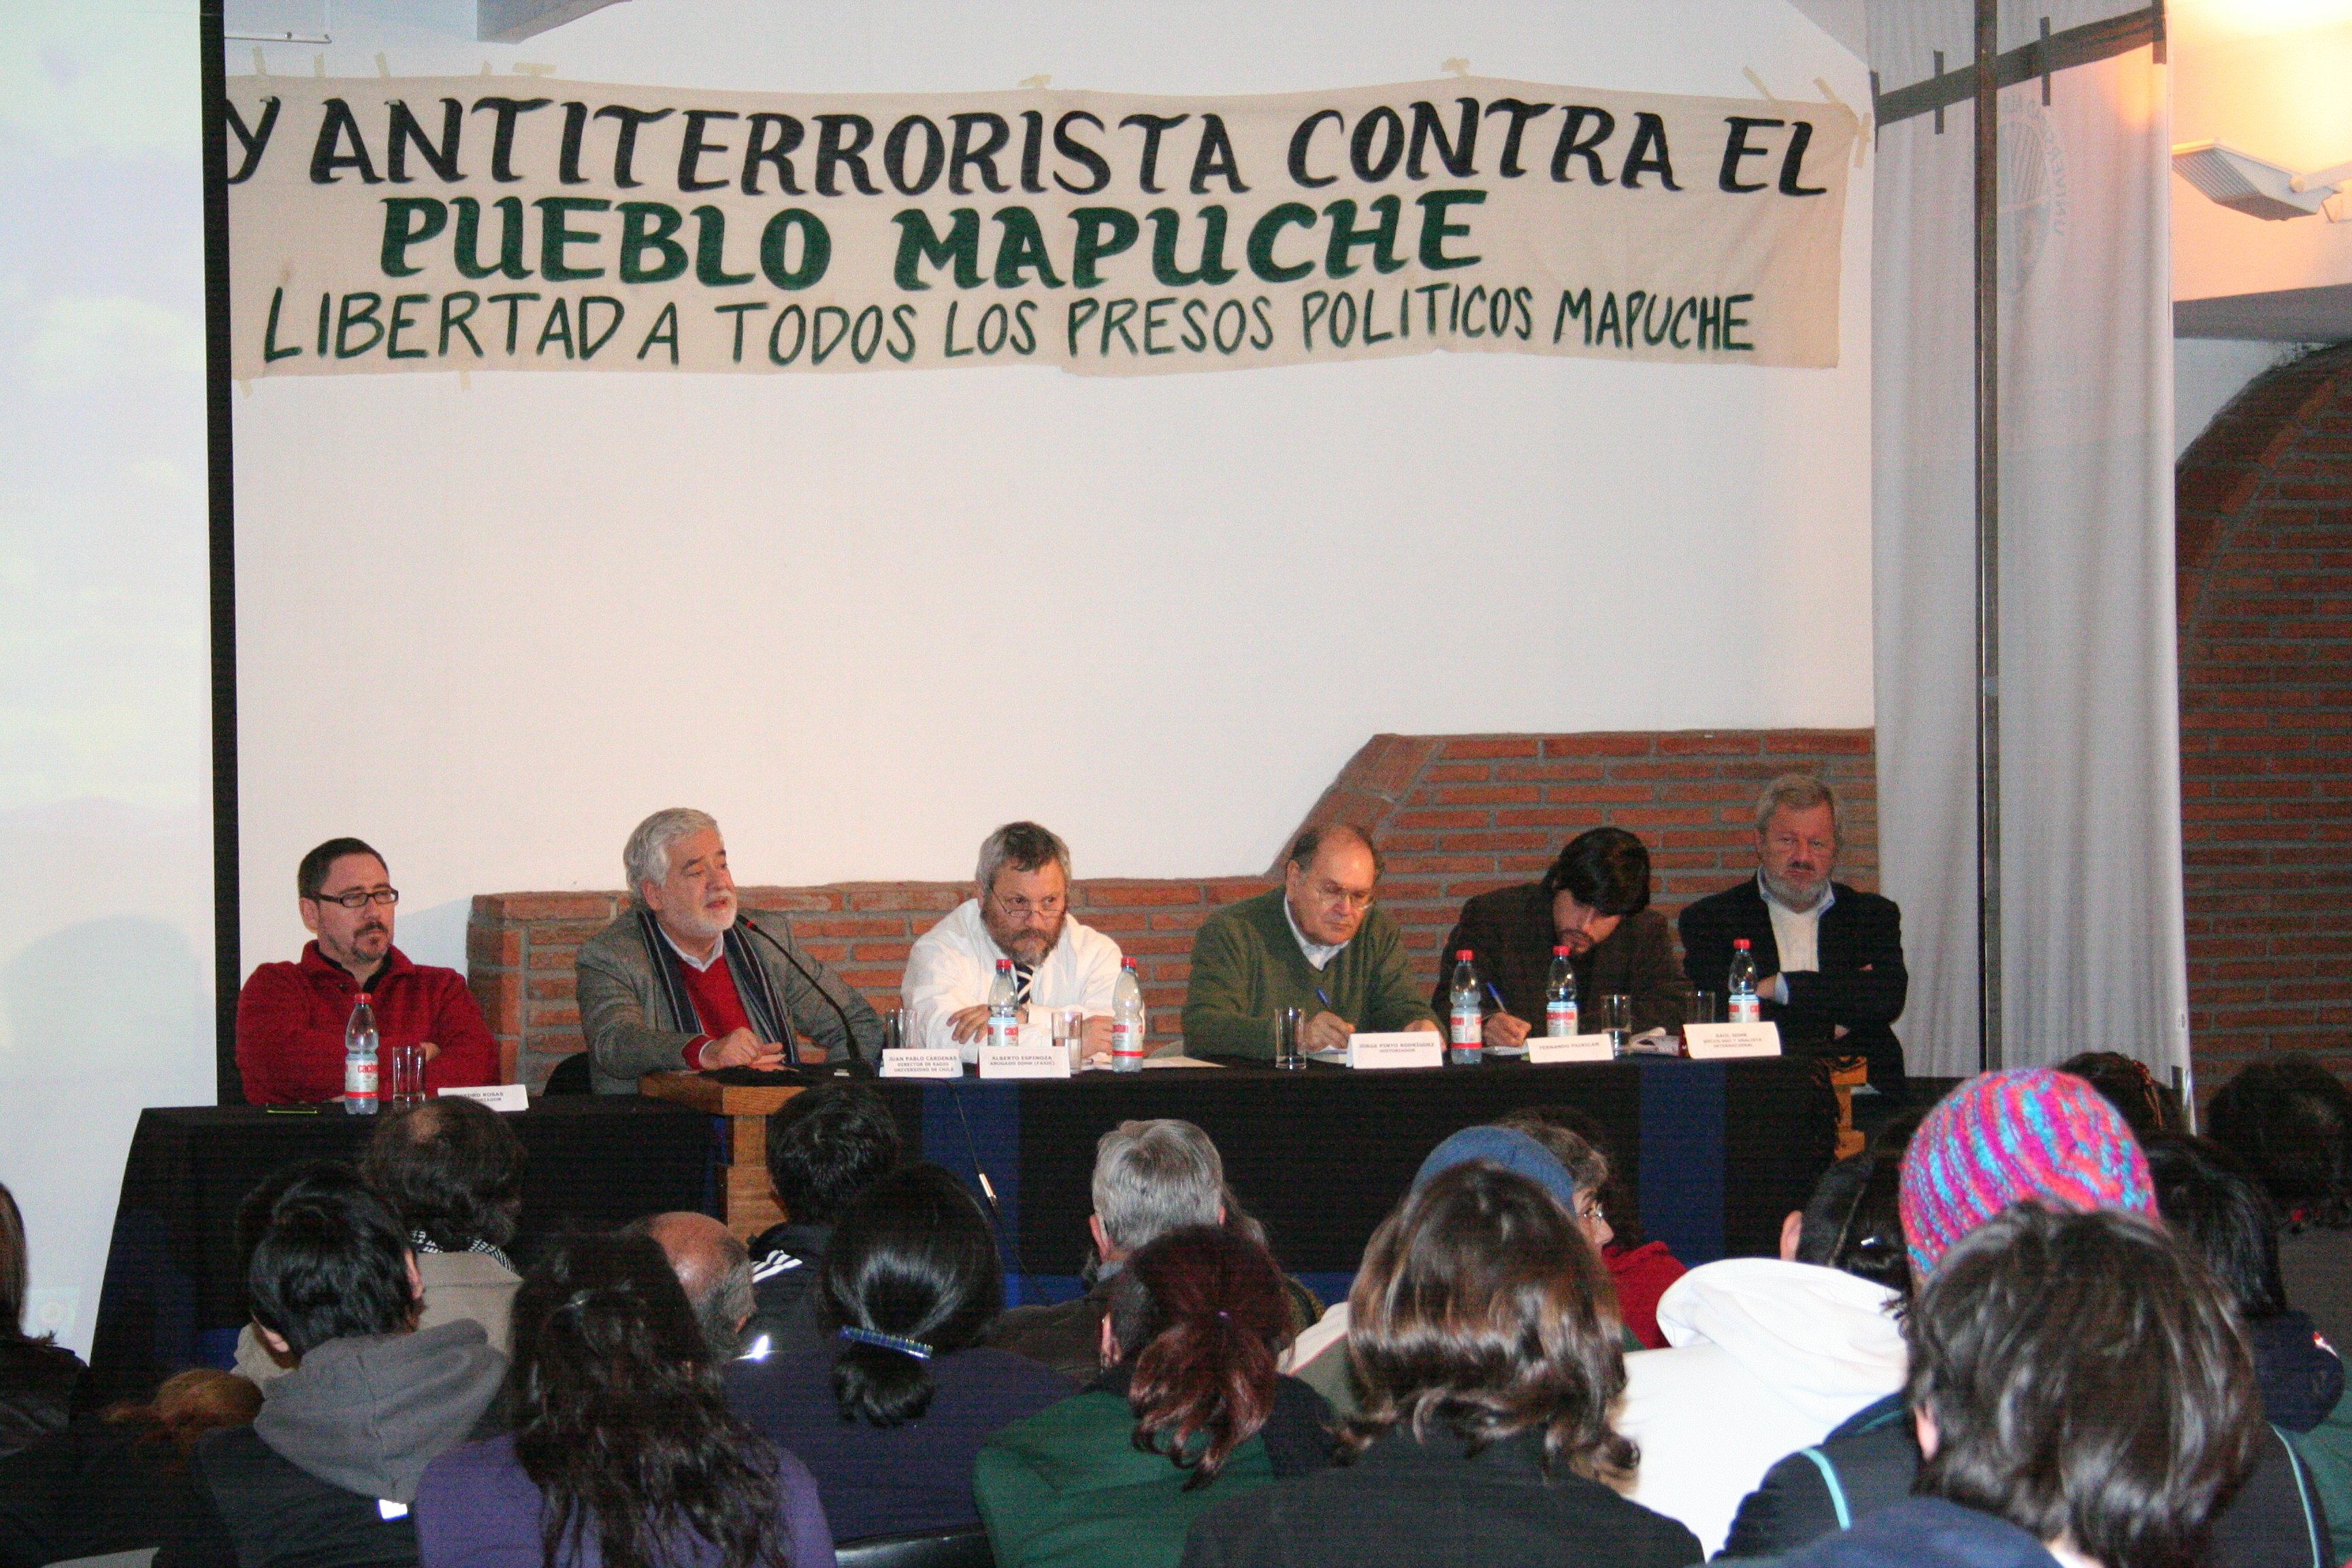 Pueblo Mapuche: “La criminalización de una nación”